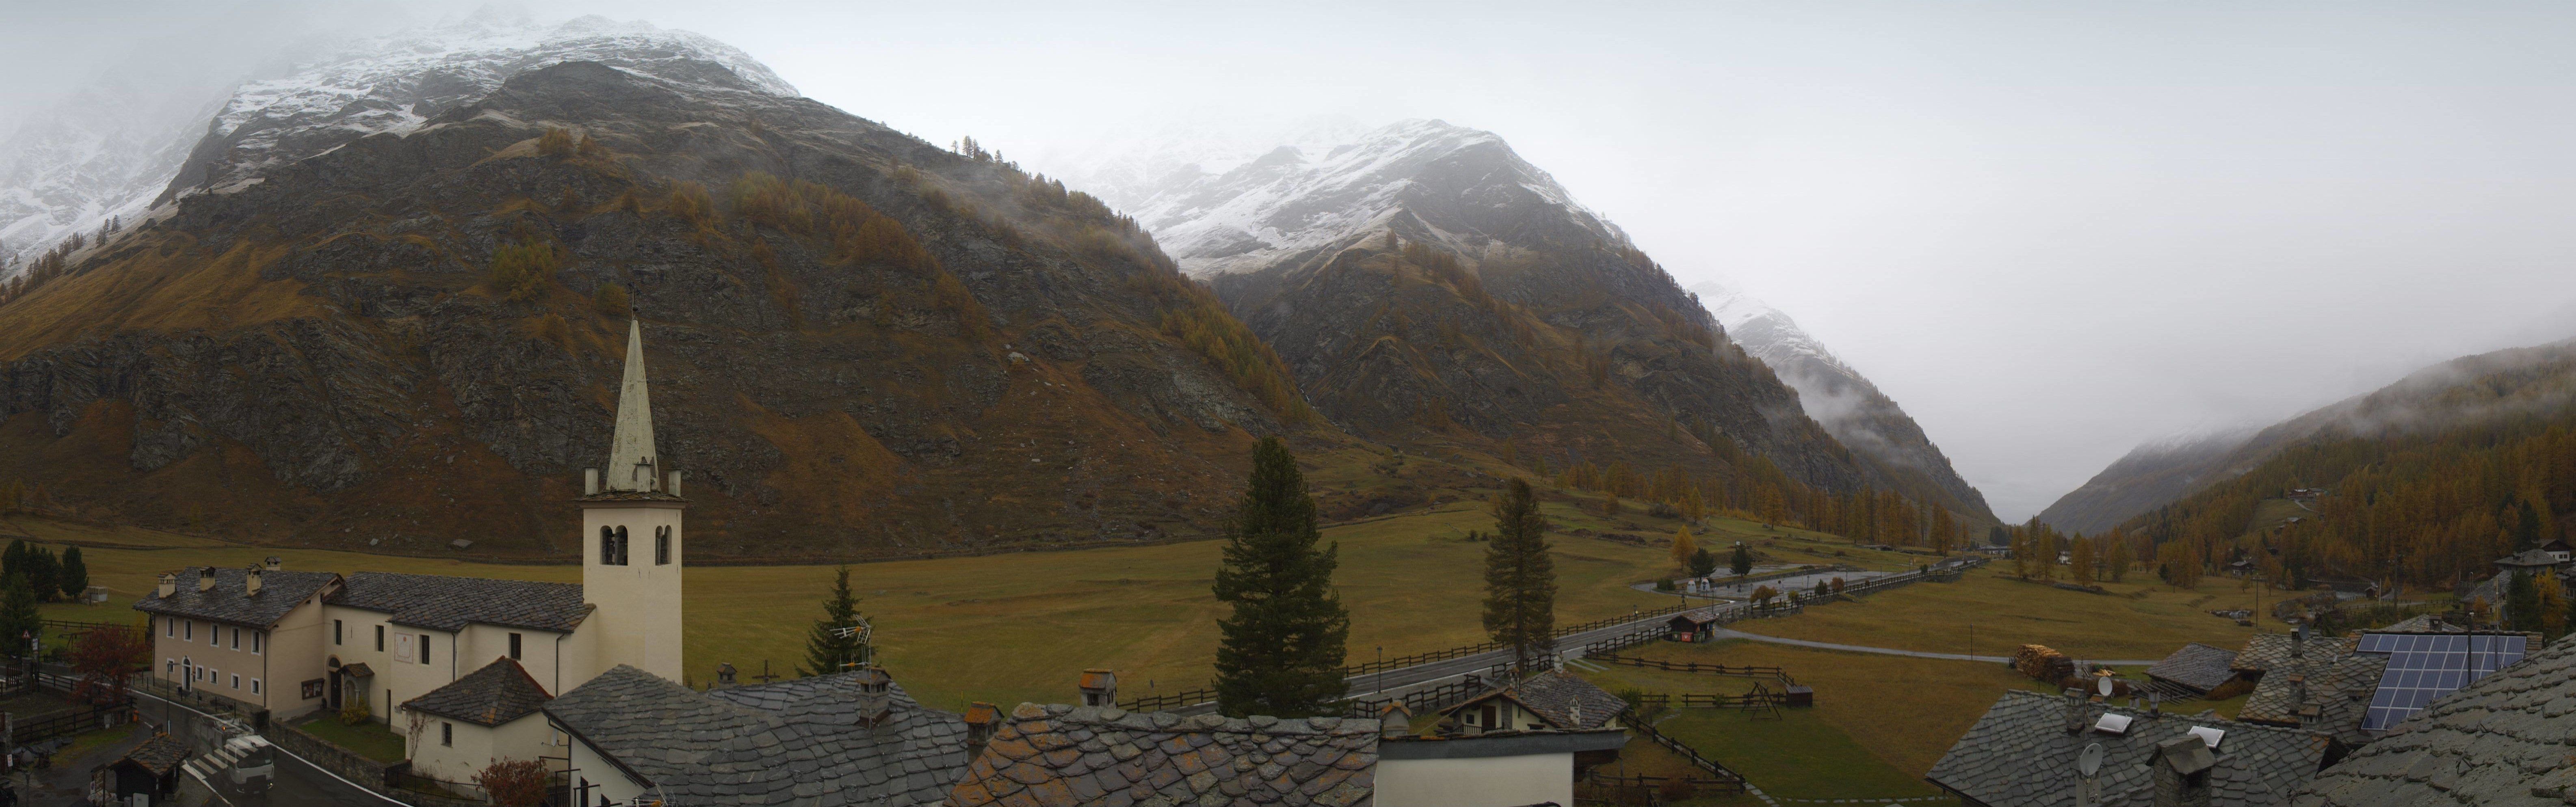 Aan de zuidkant is de sneeuwgrens zichtbaar hoger, zoals hier in Rhêmes-Notre-Dame (Aosta)